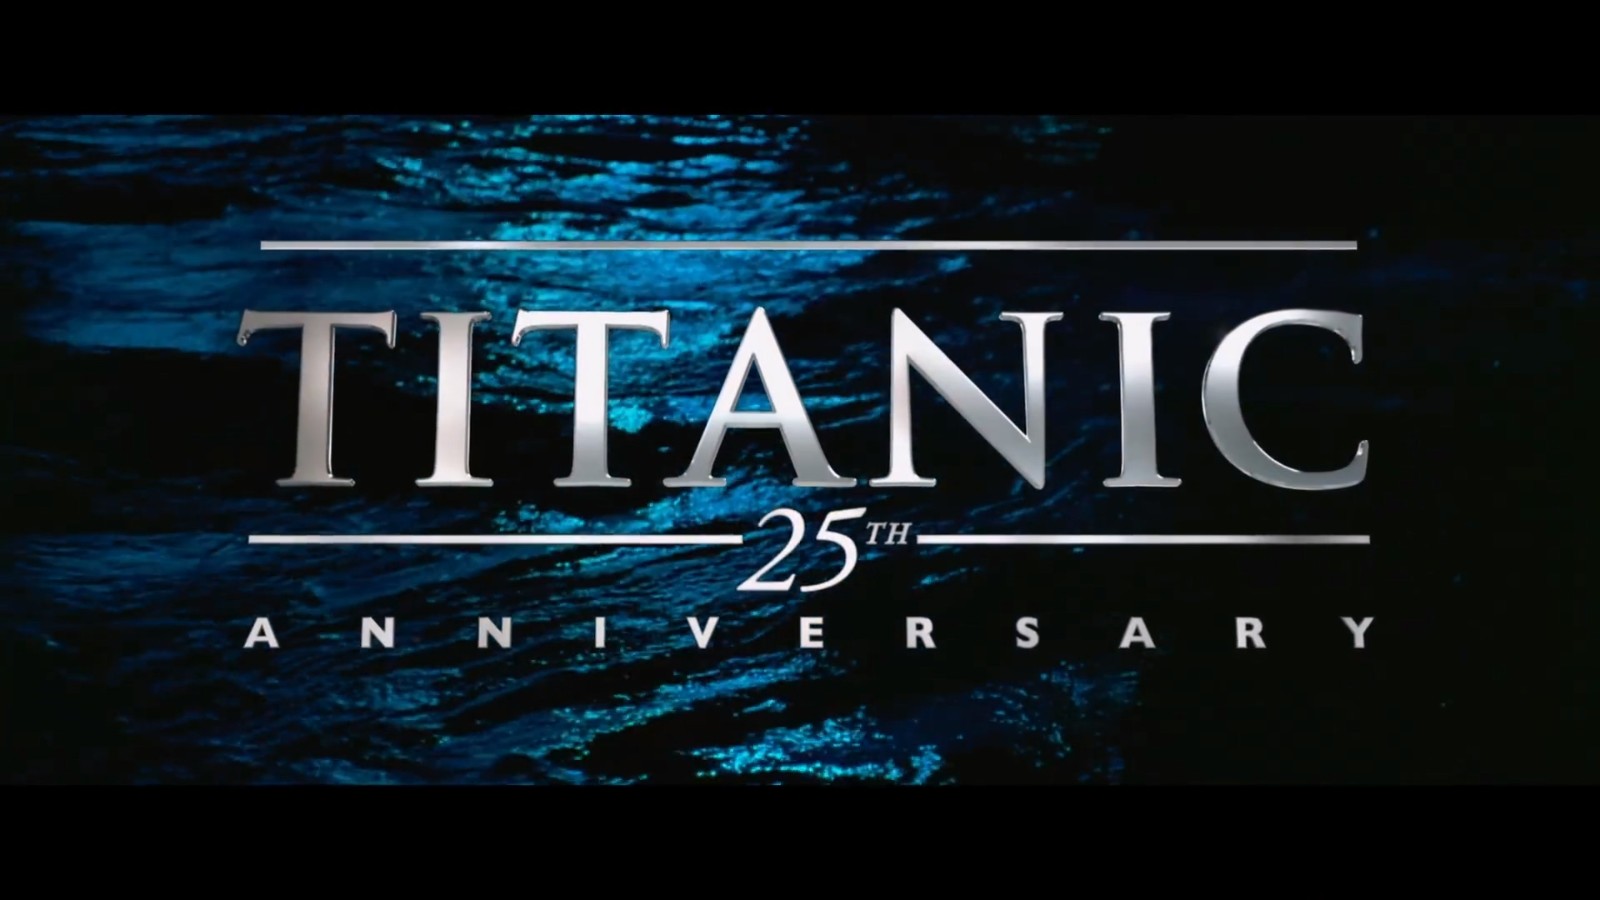 《泰坦尼克号》上映25周年纪念版预告 2月10日来袭